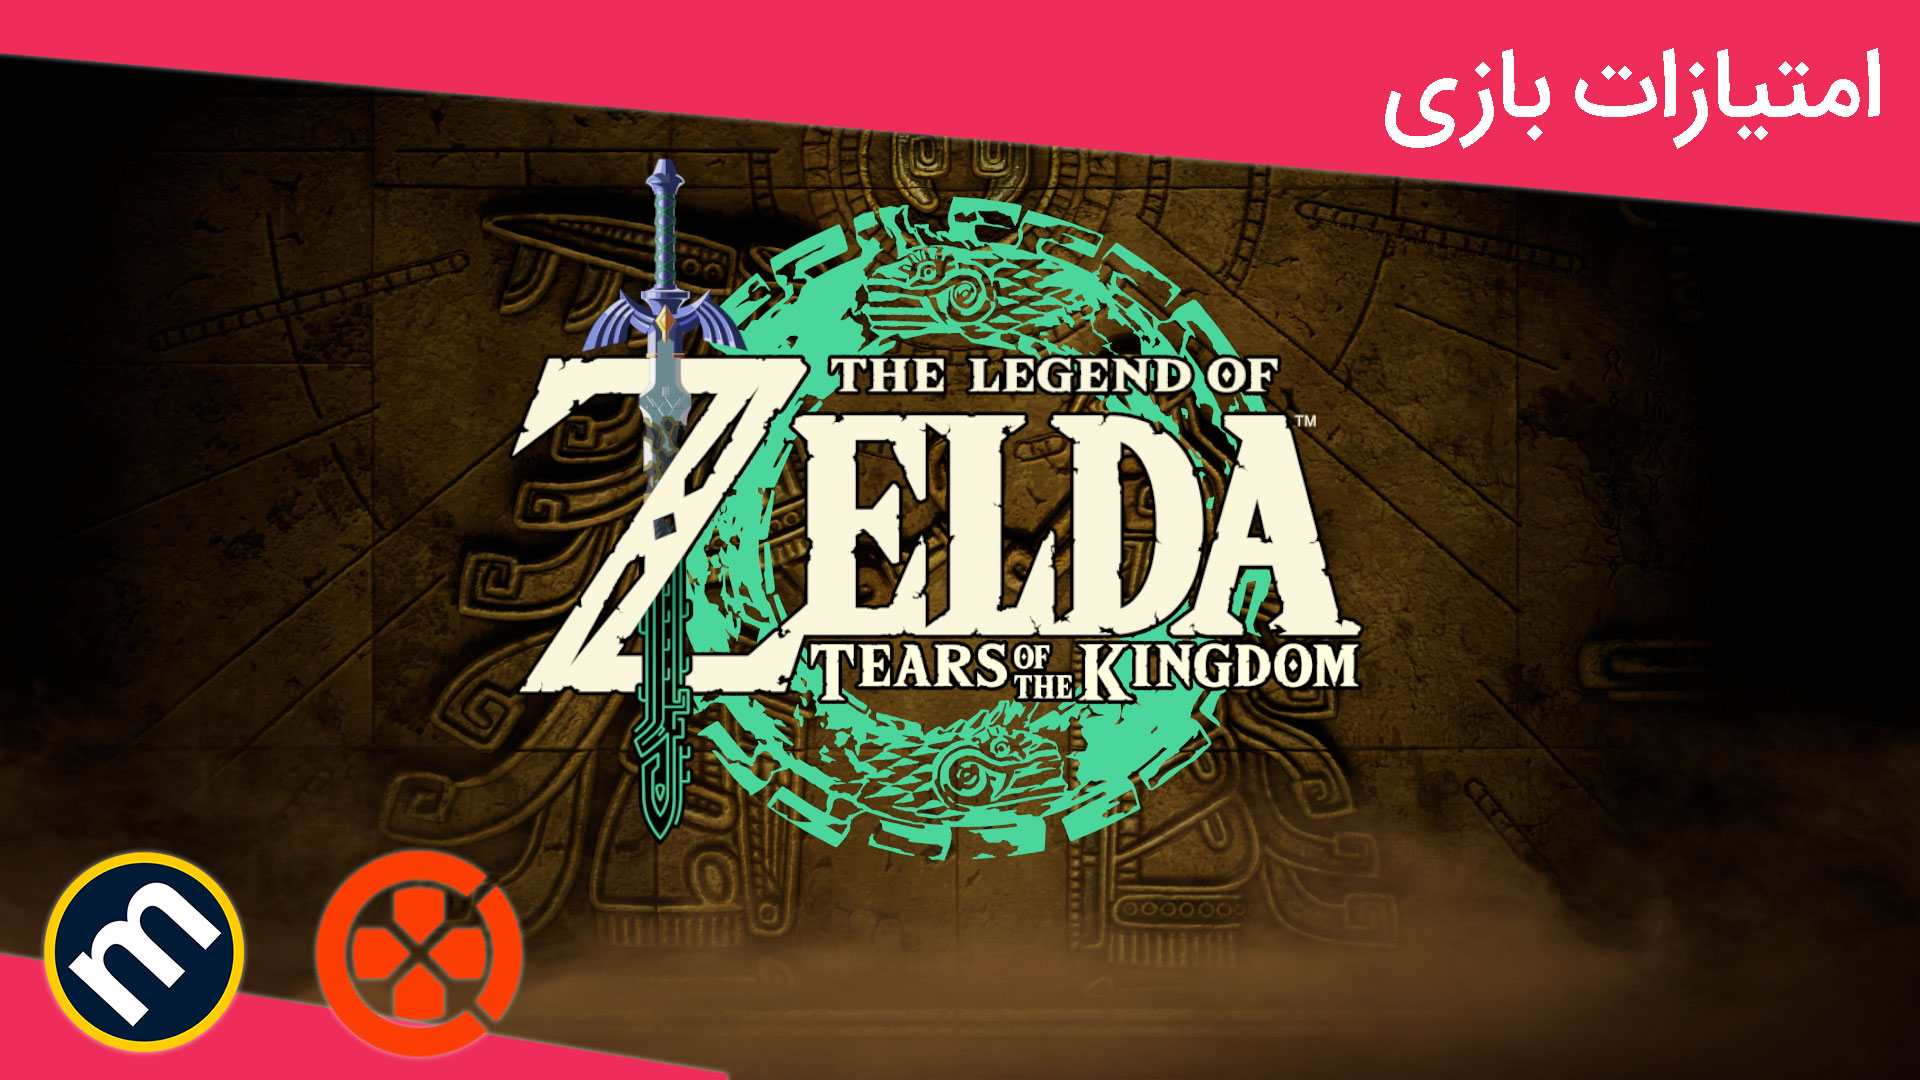 واکنش منتقدین به The Legend of Zelda: Tears of Kingdom